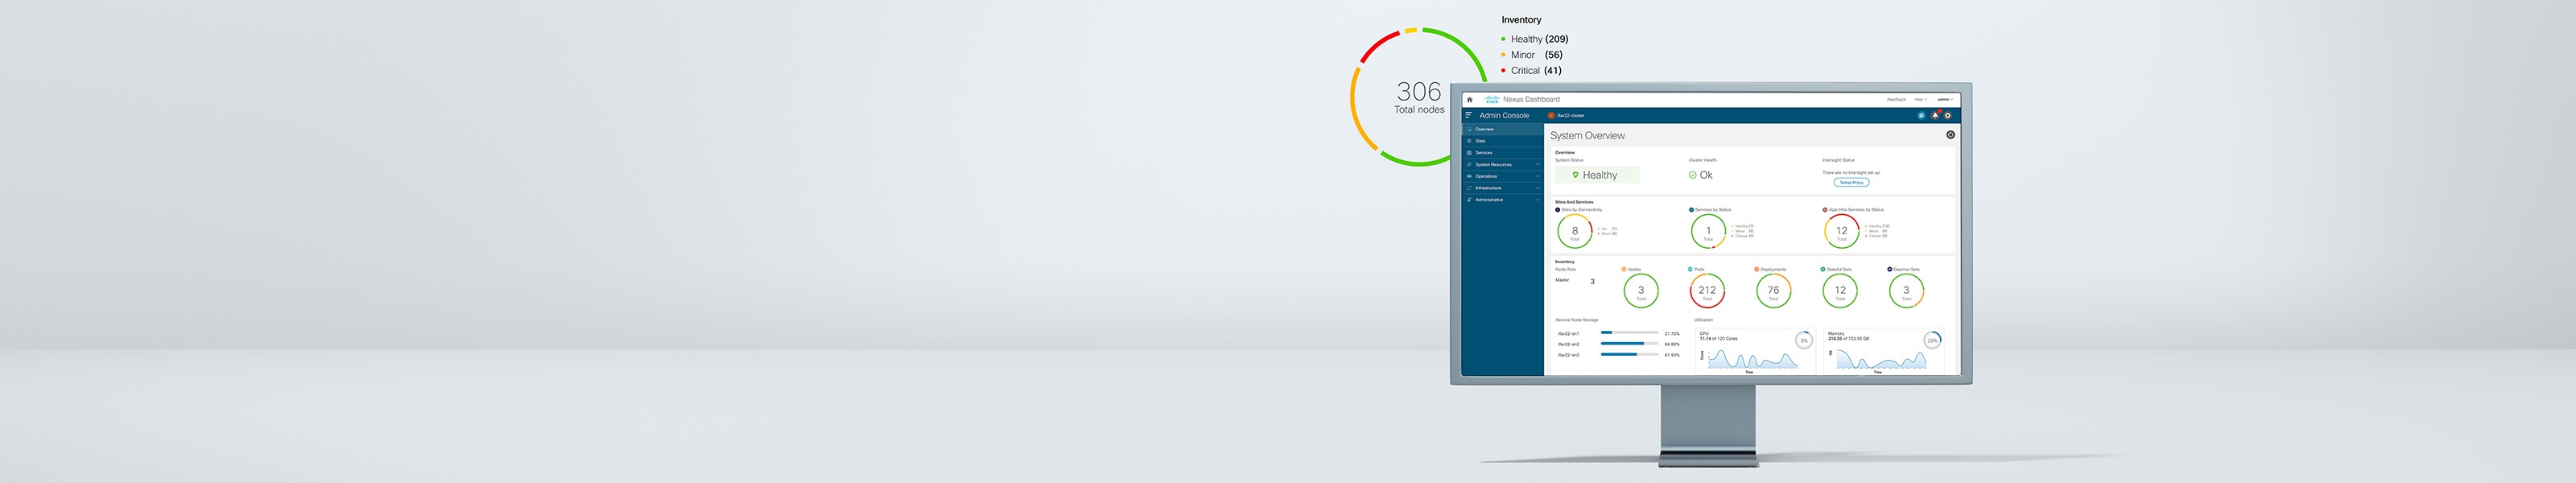 Cisco Nexus Dashboard affichant une vue d'ensemble du système